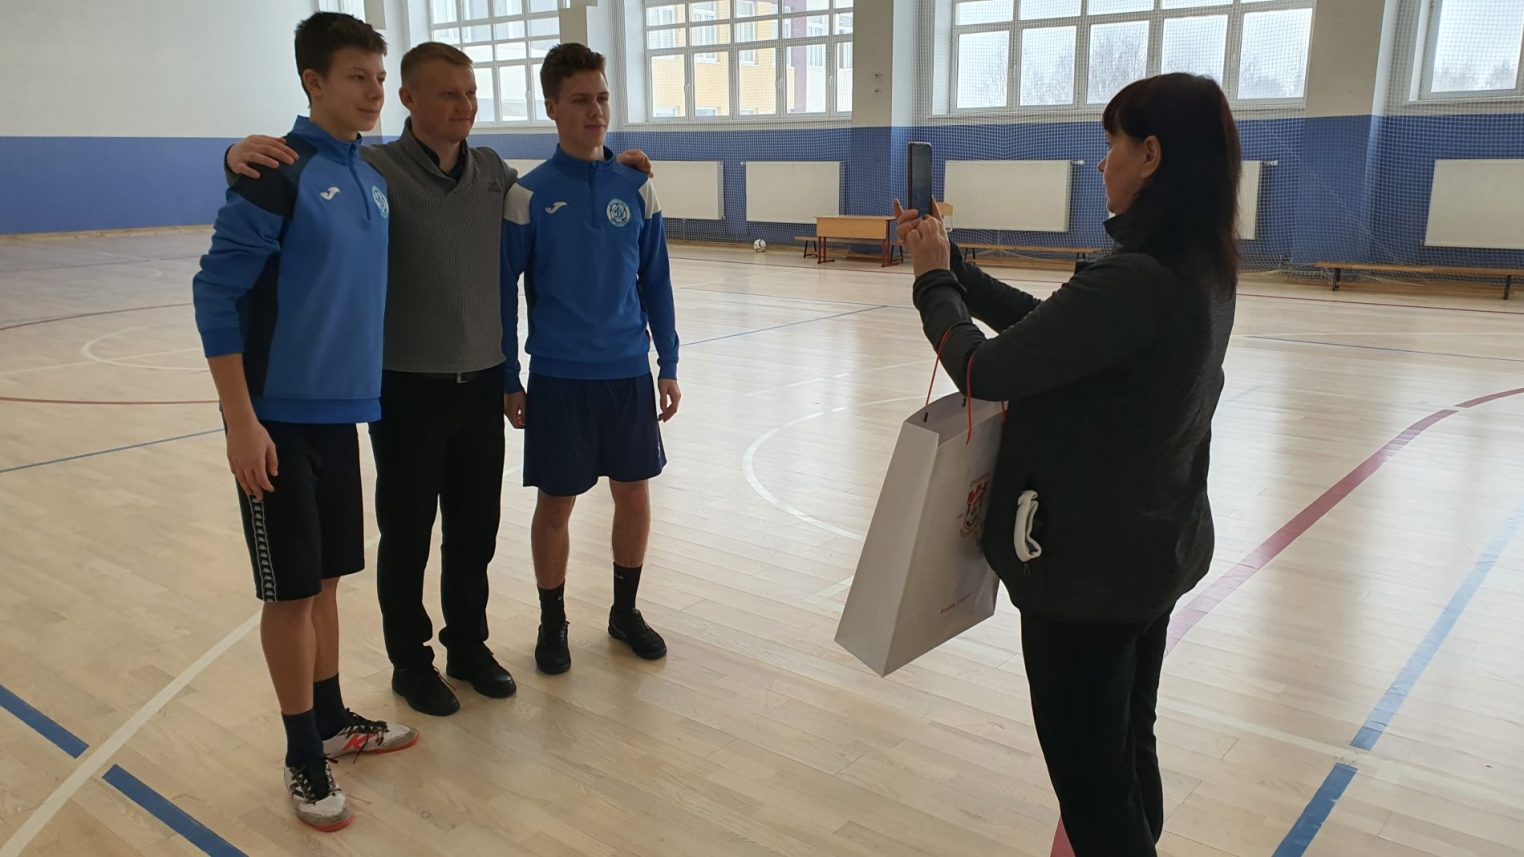 Уроки Чемпионов: Костромской «Спартак» провел мастер-класс для подрастающих футболистов